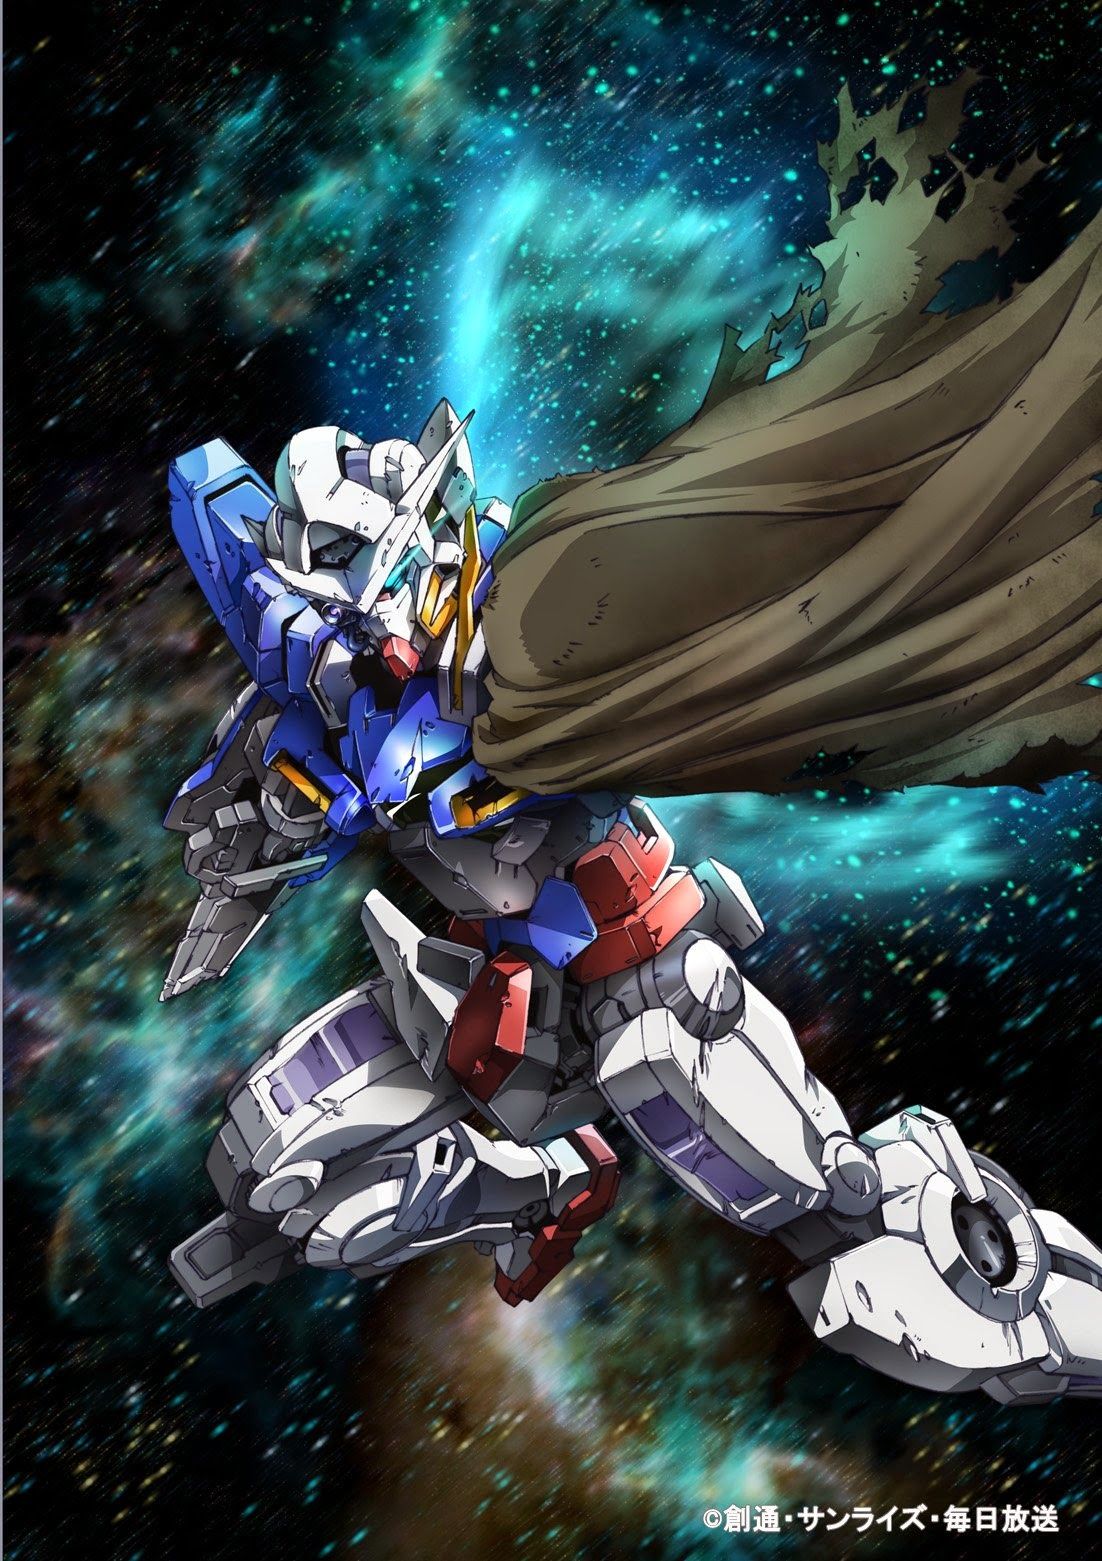 GN-001RE Gundam Exia Repair Wallpaper Poster Image - Gundam Kits ...